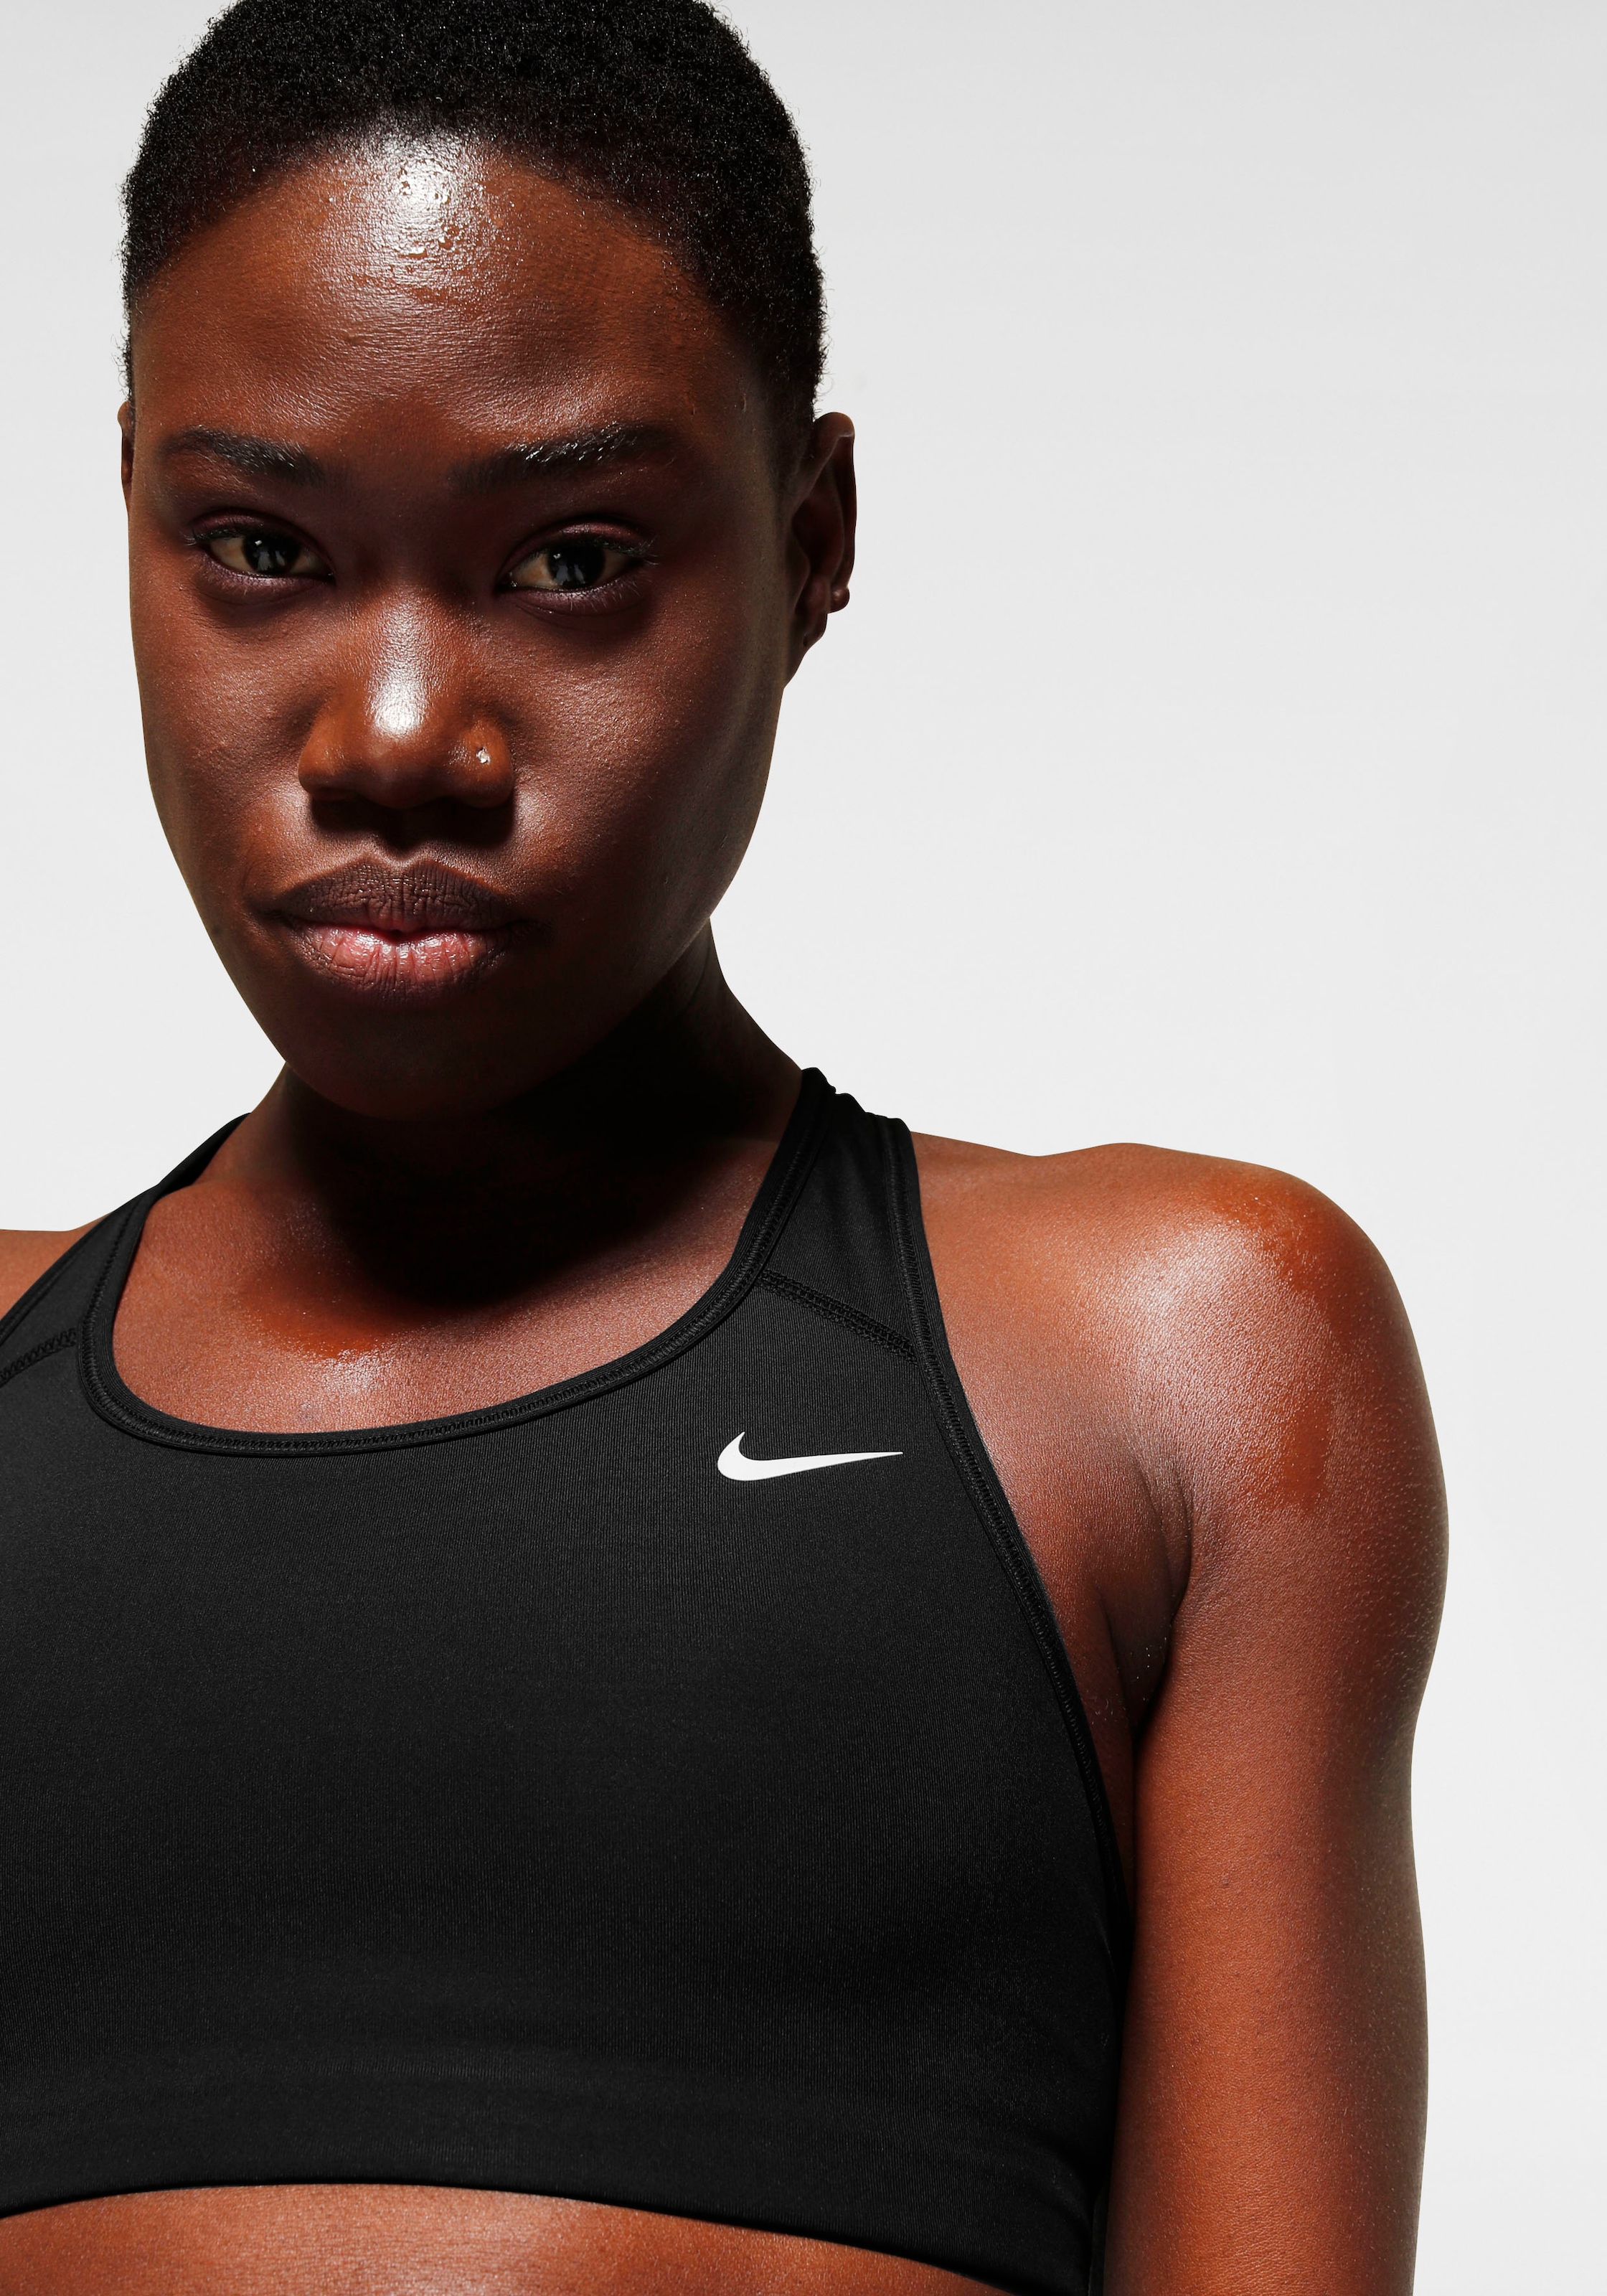 Women\'s Bra« kaufen versandkostenfrei Swoosh Non-Padded Medium-Support Nike ♕ »Dri-FIT Sports Sport-BH